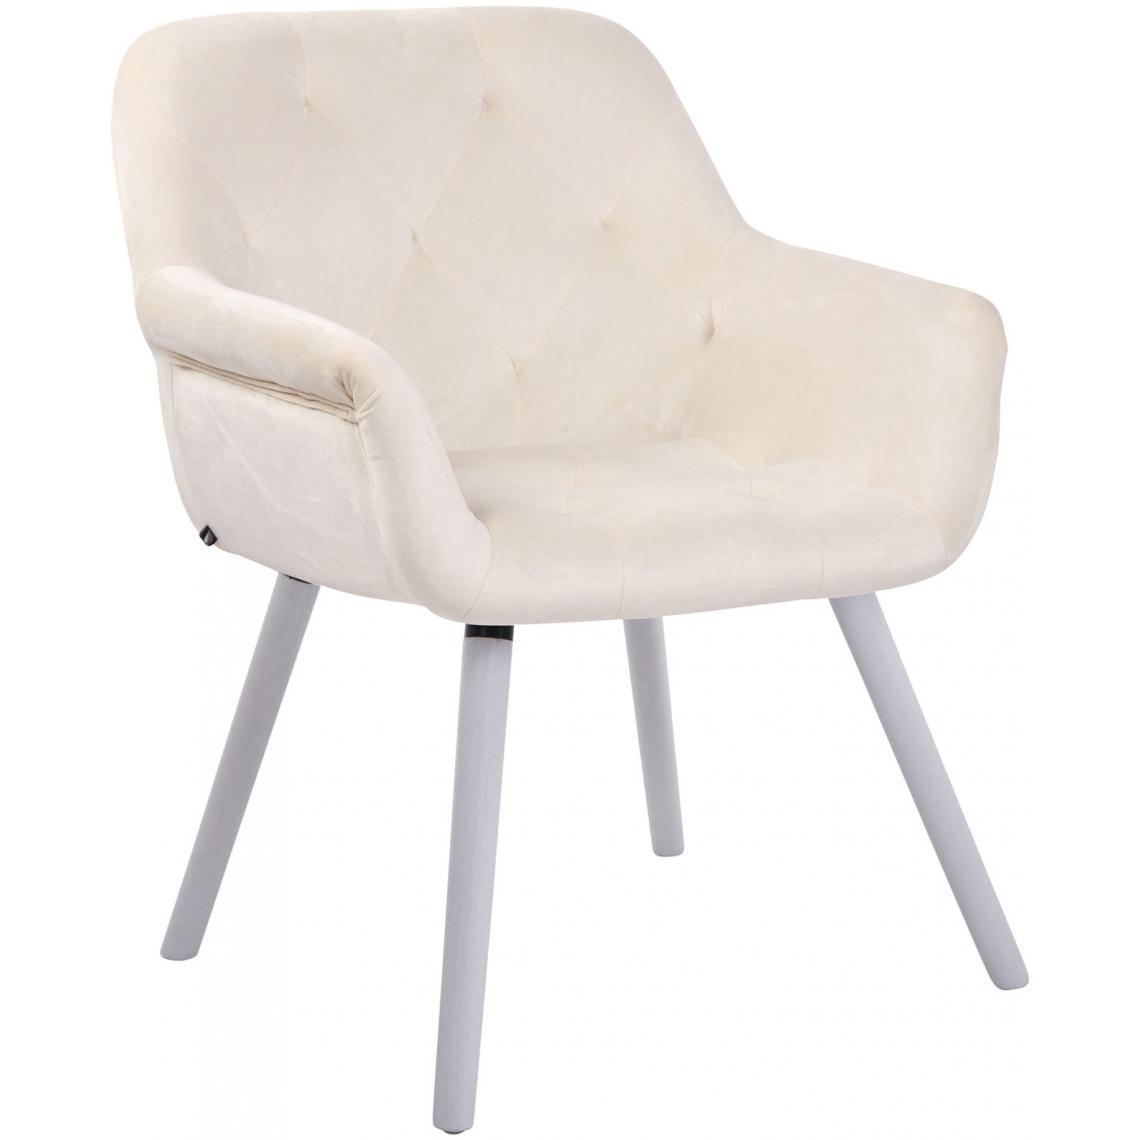 Icaverne - Stylé Chaise de salle à manger serie Khartoum velours blanc (chêne) couleur crème - Chaises